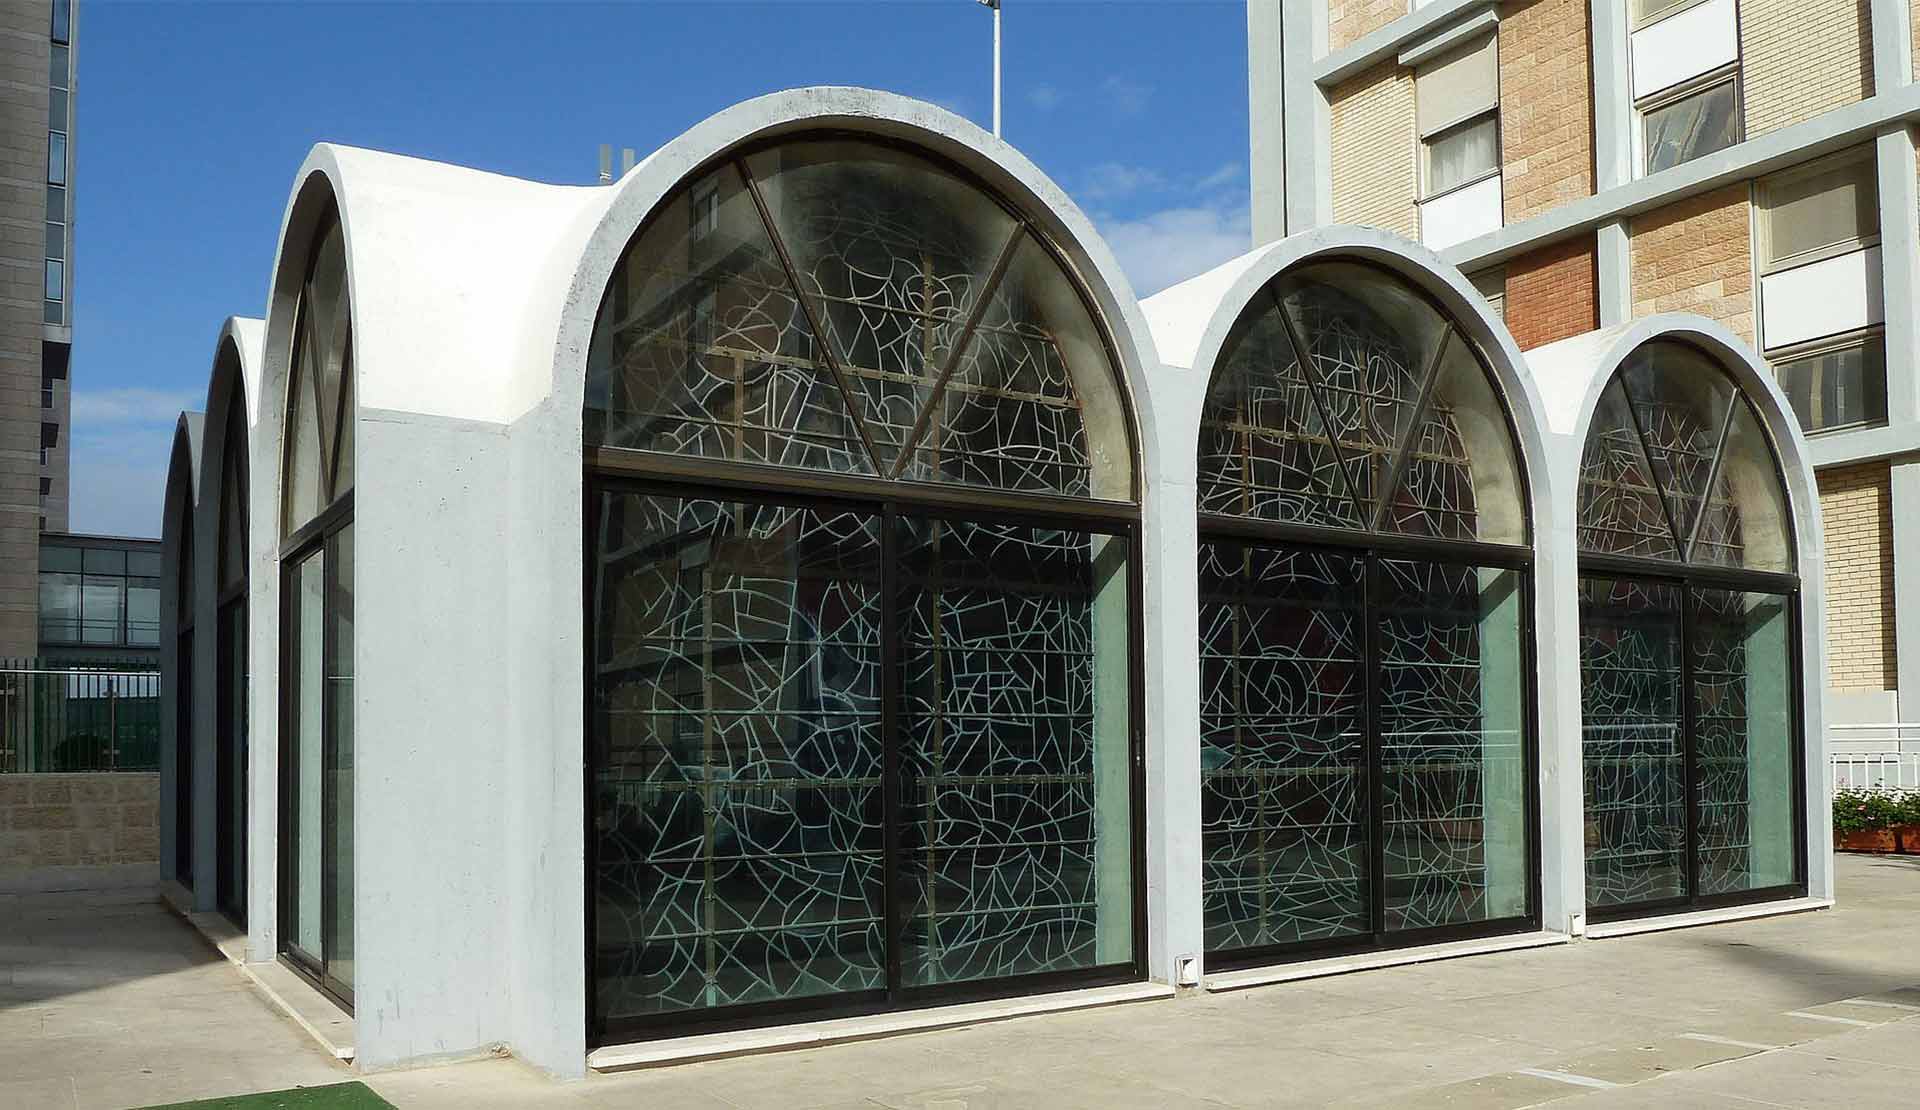 'חלונות שאגאל' בית הכנסת מבחוץ ומבפנים. מקור: ויקיפדיה